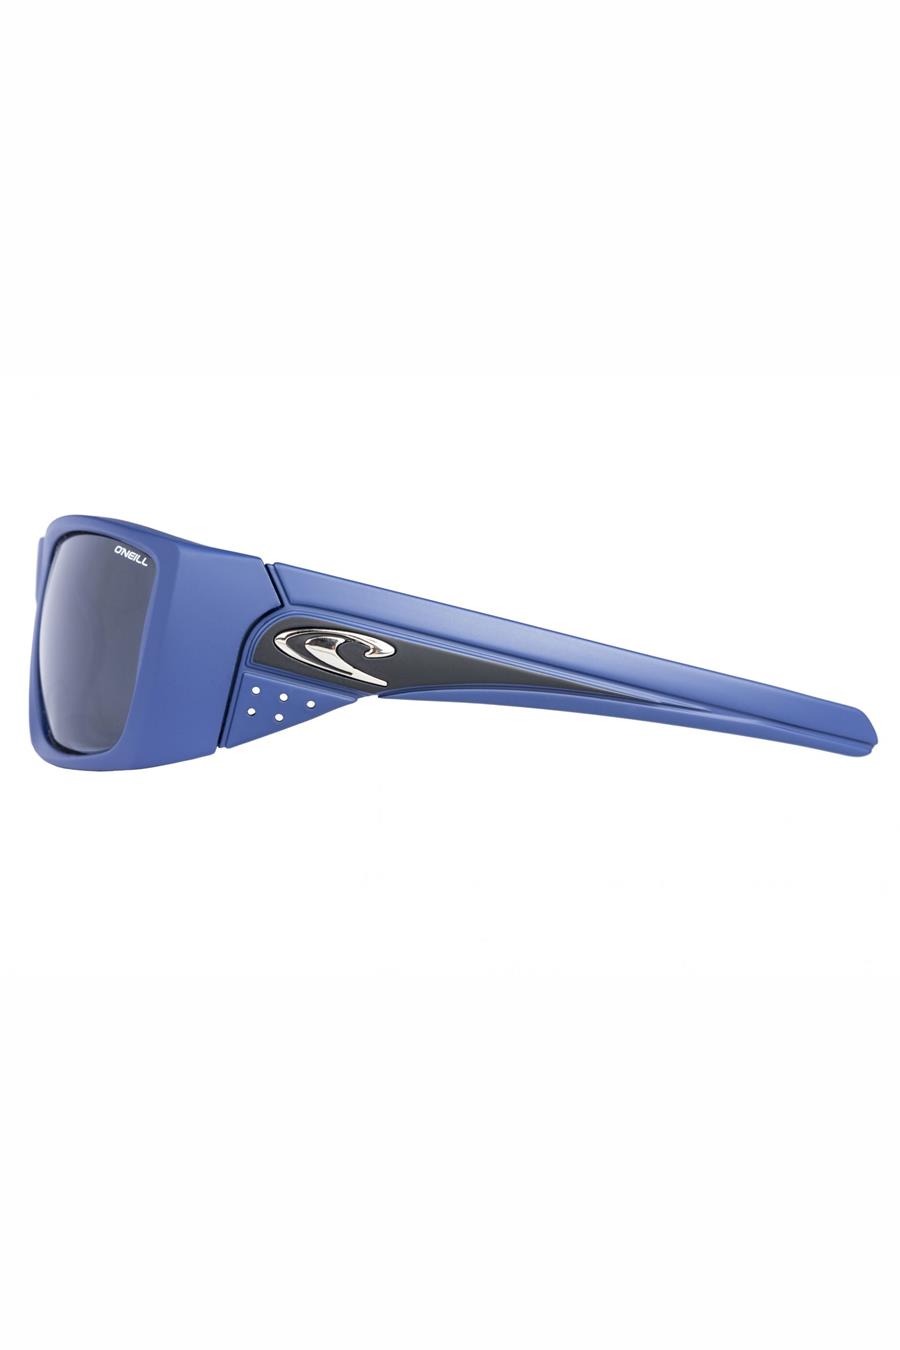 Солнечные очки ONEILL ONS-WAVERIDER-106P